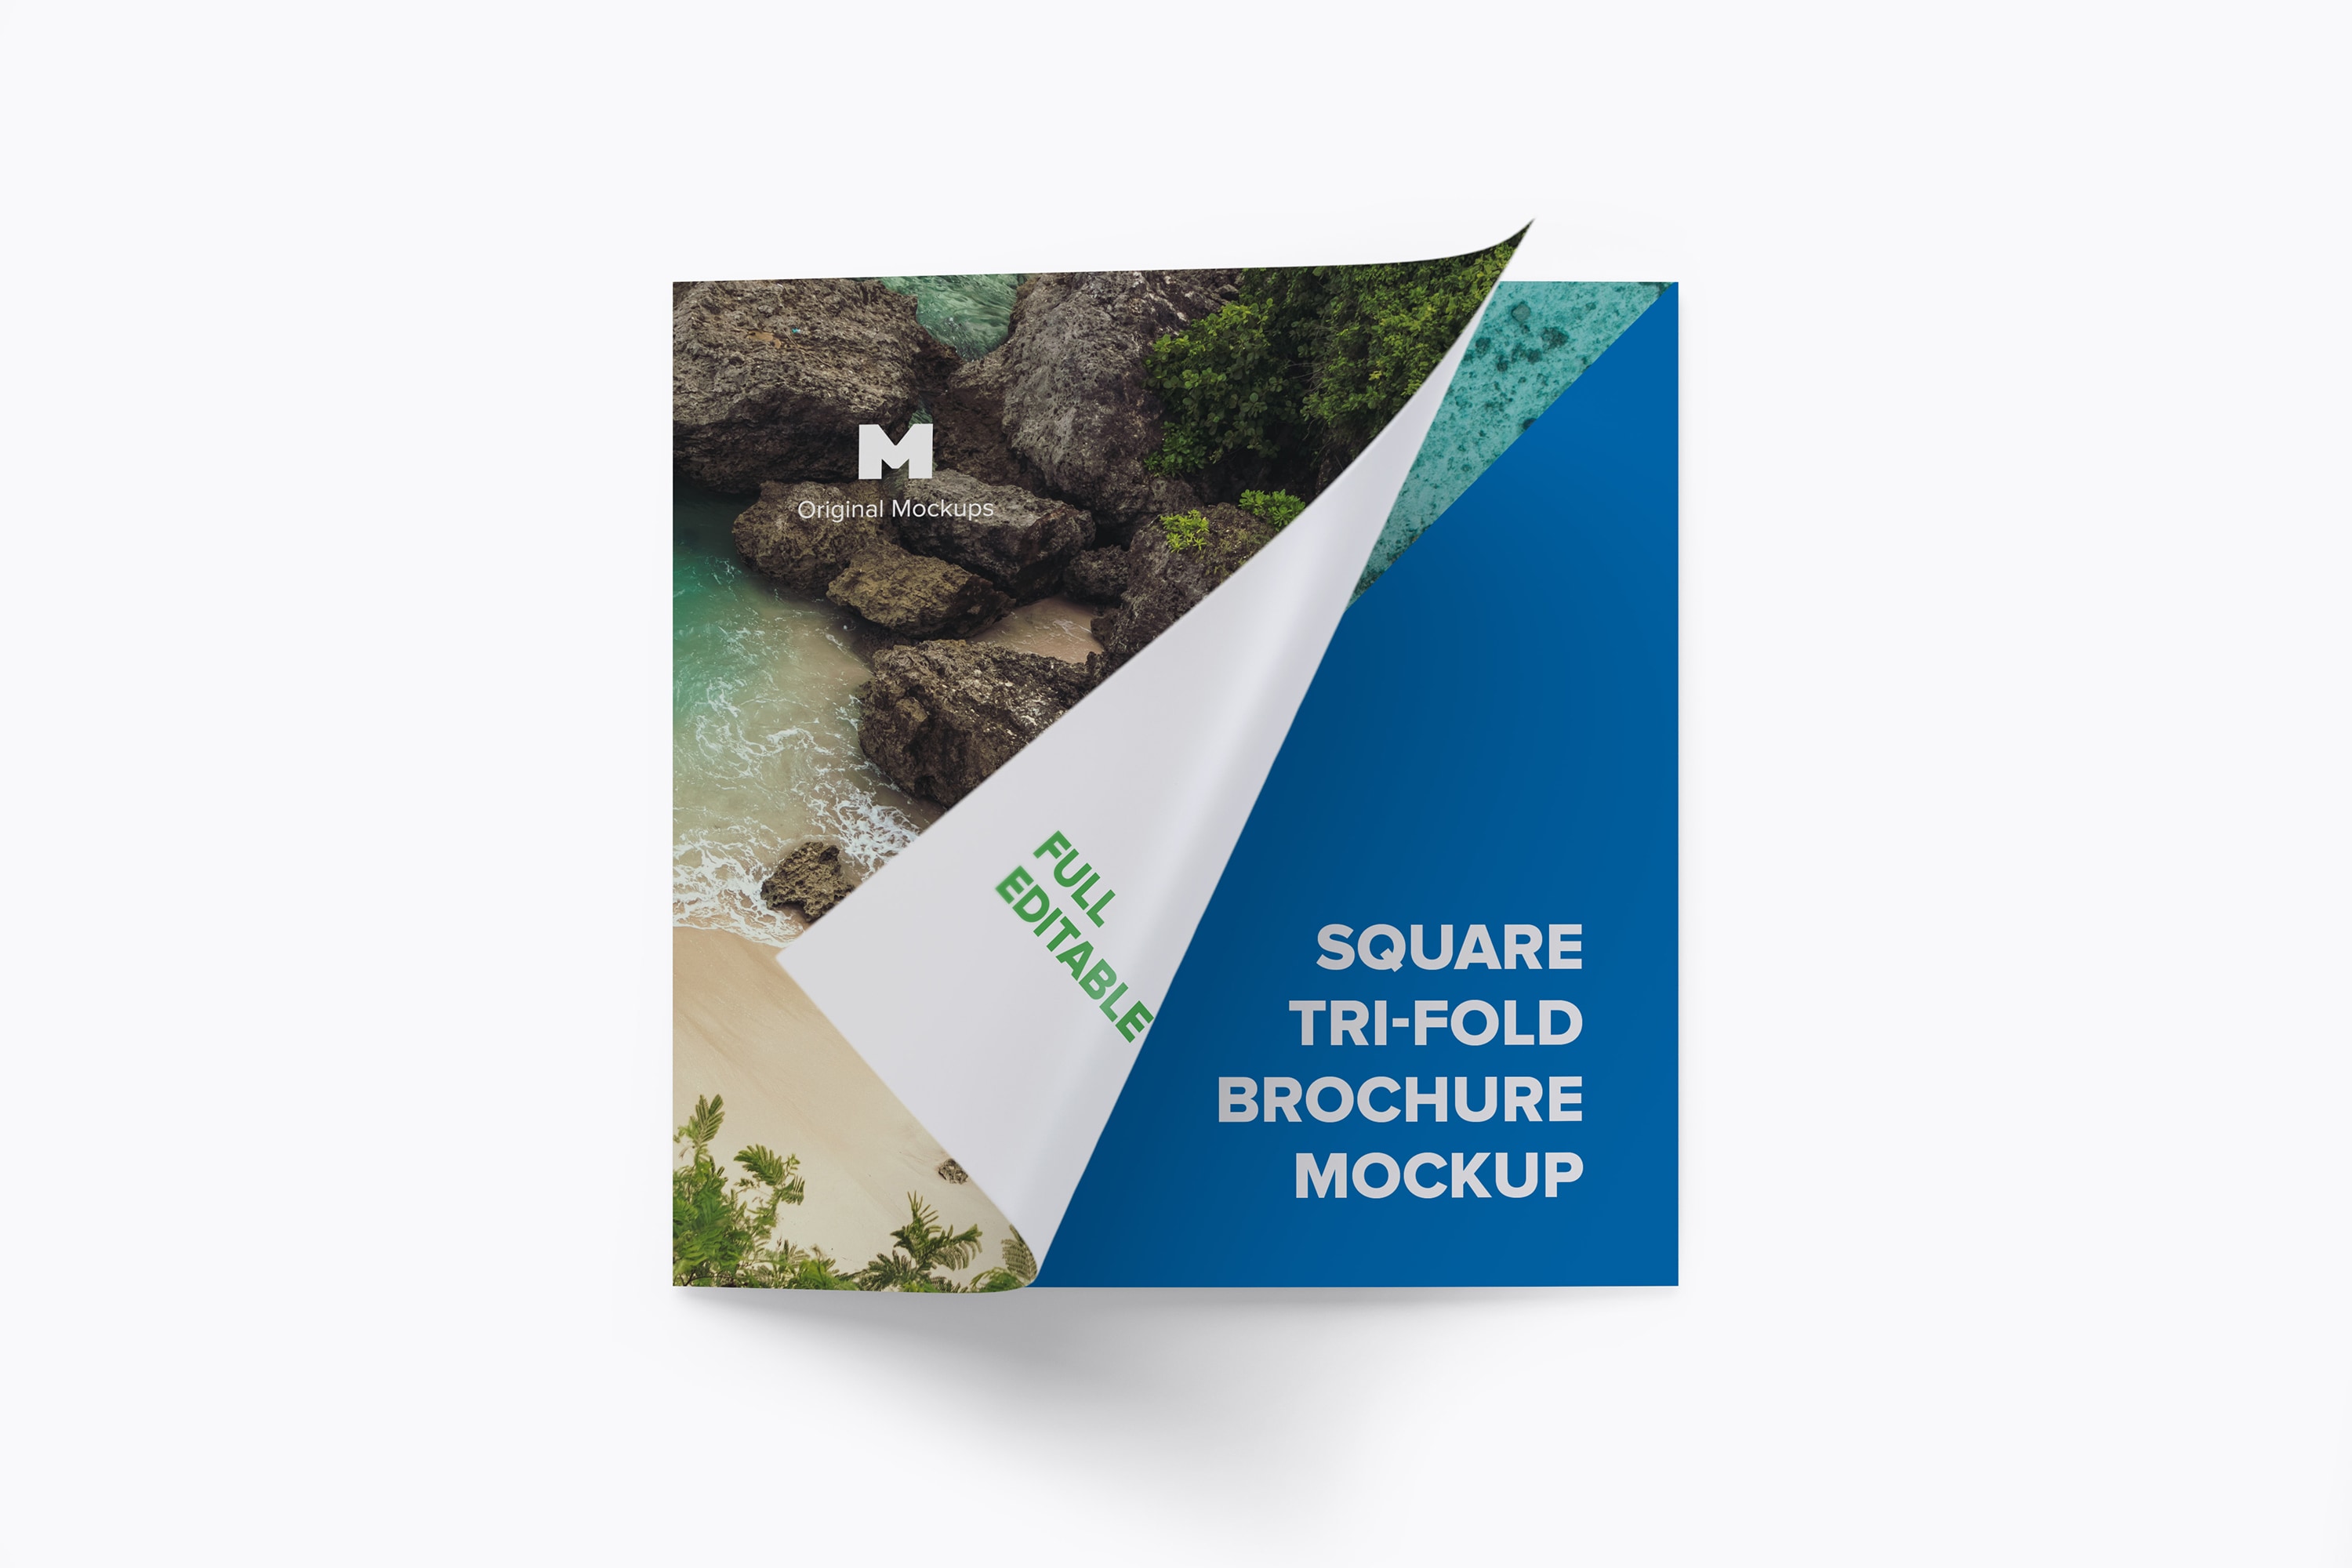 方形三折页宣传传单设计图样机03 Square Tri-Fold Brochure Mockup 03插图